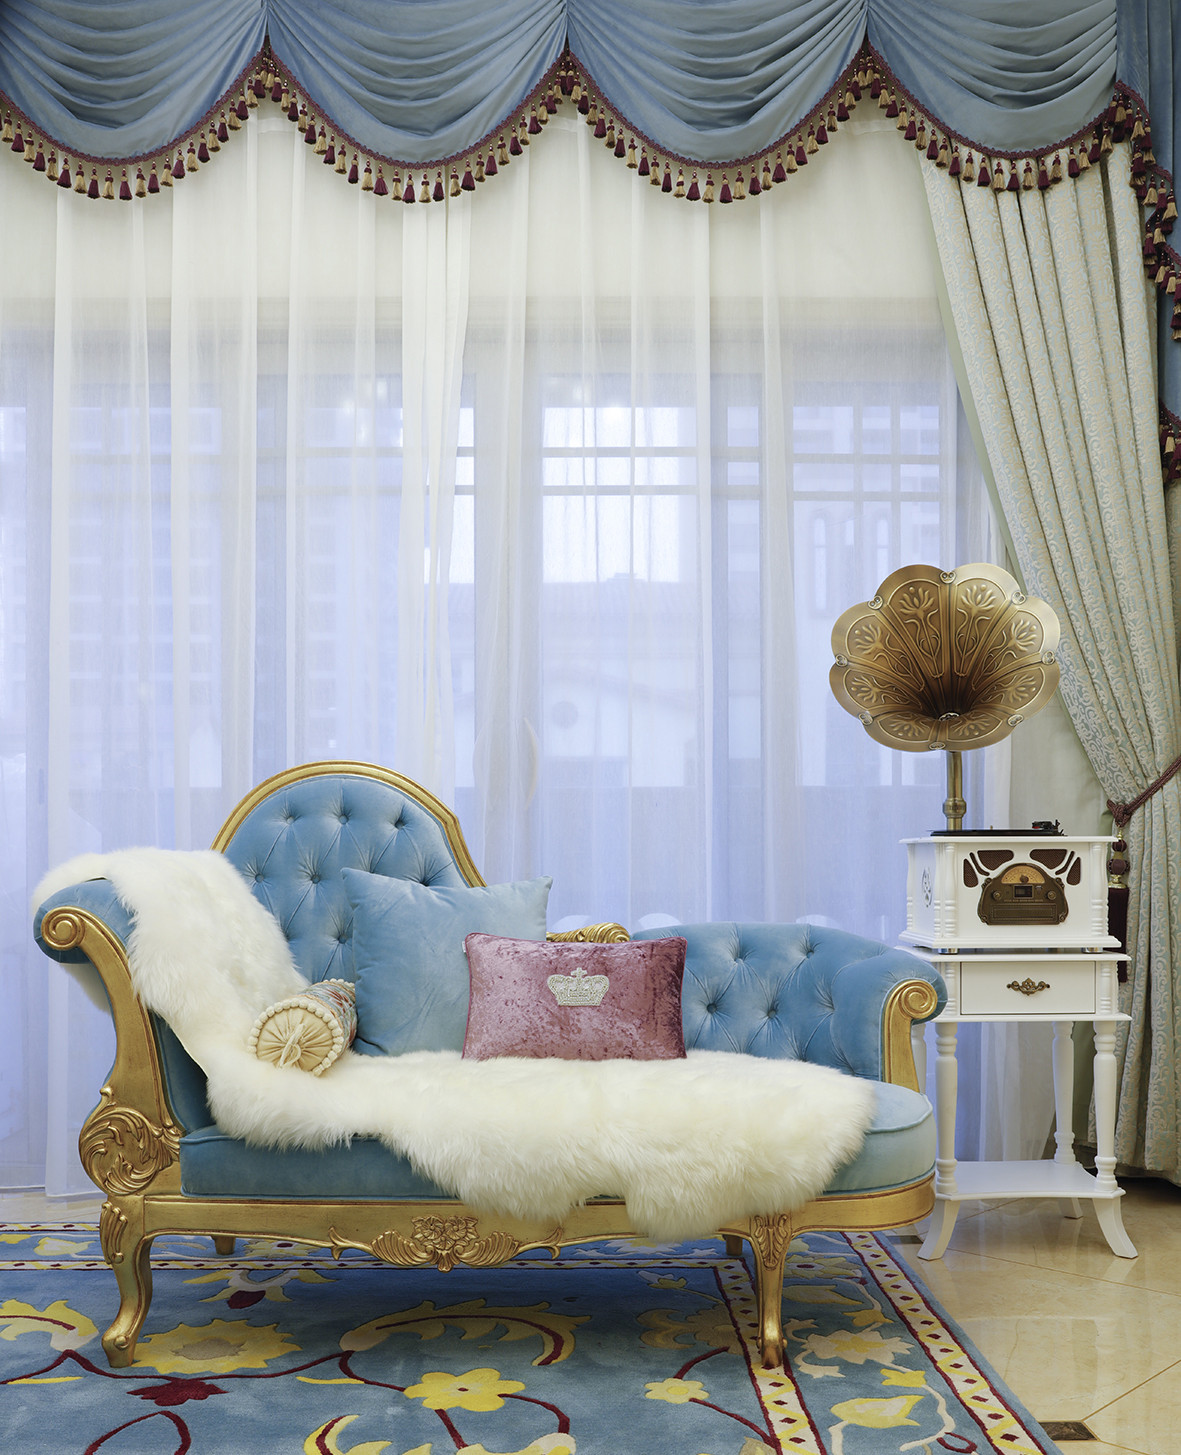 复式装修,豪华型装修,140平米以上装修,客厅,法式风格,金色,蓝色,椅子